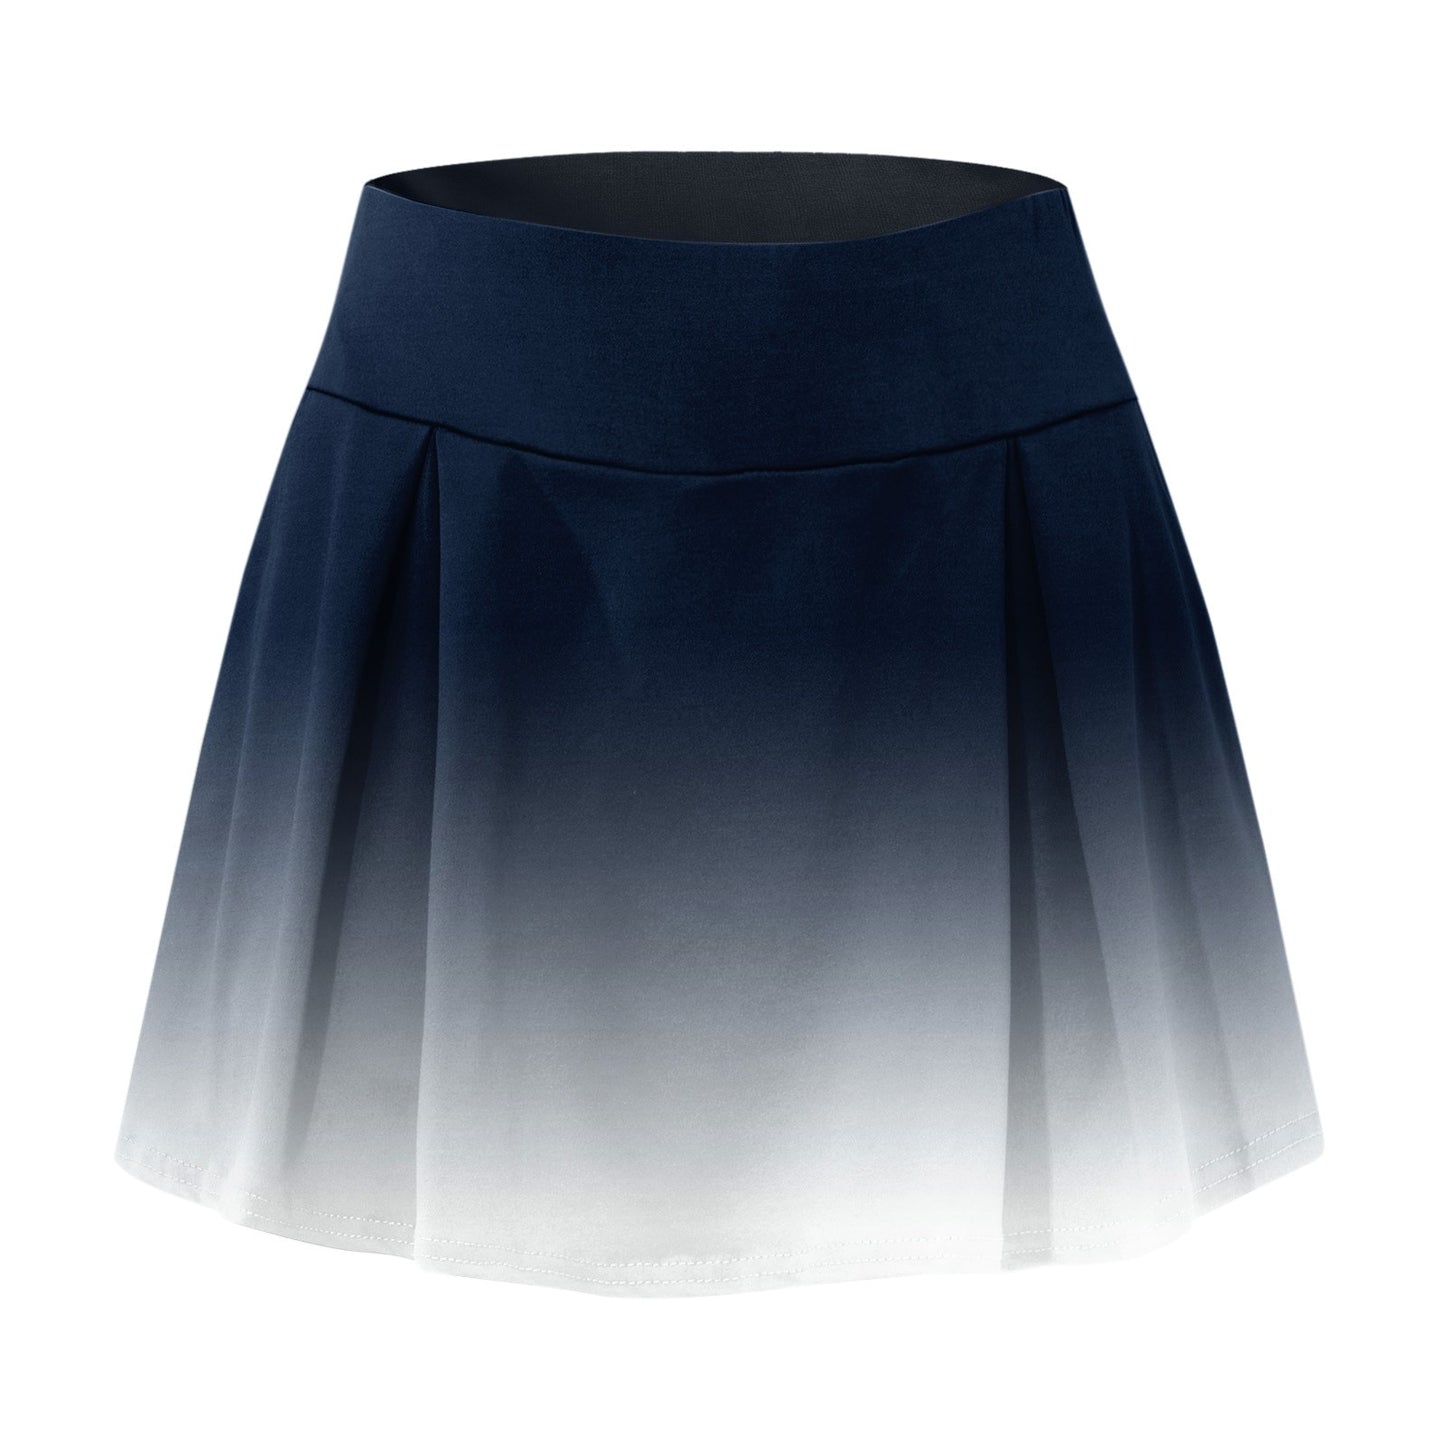 Women's Short Skirt for TENNIS, YOGA AND GOLF.